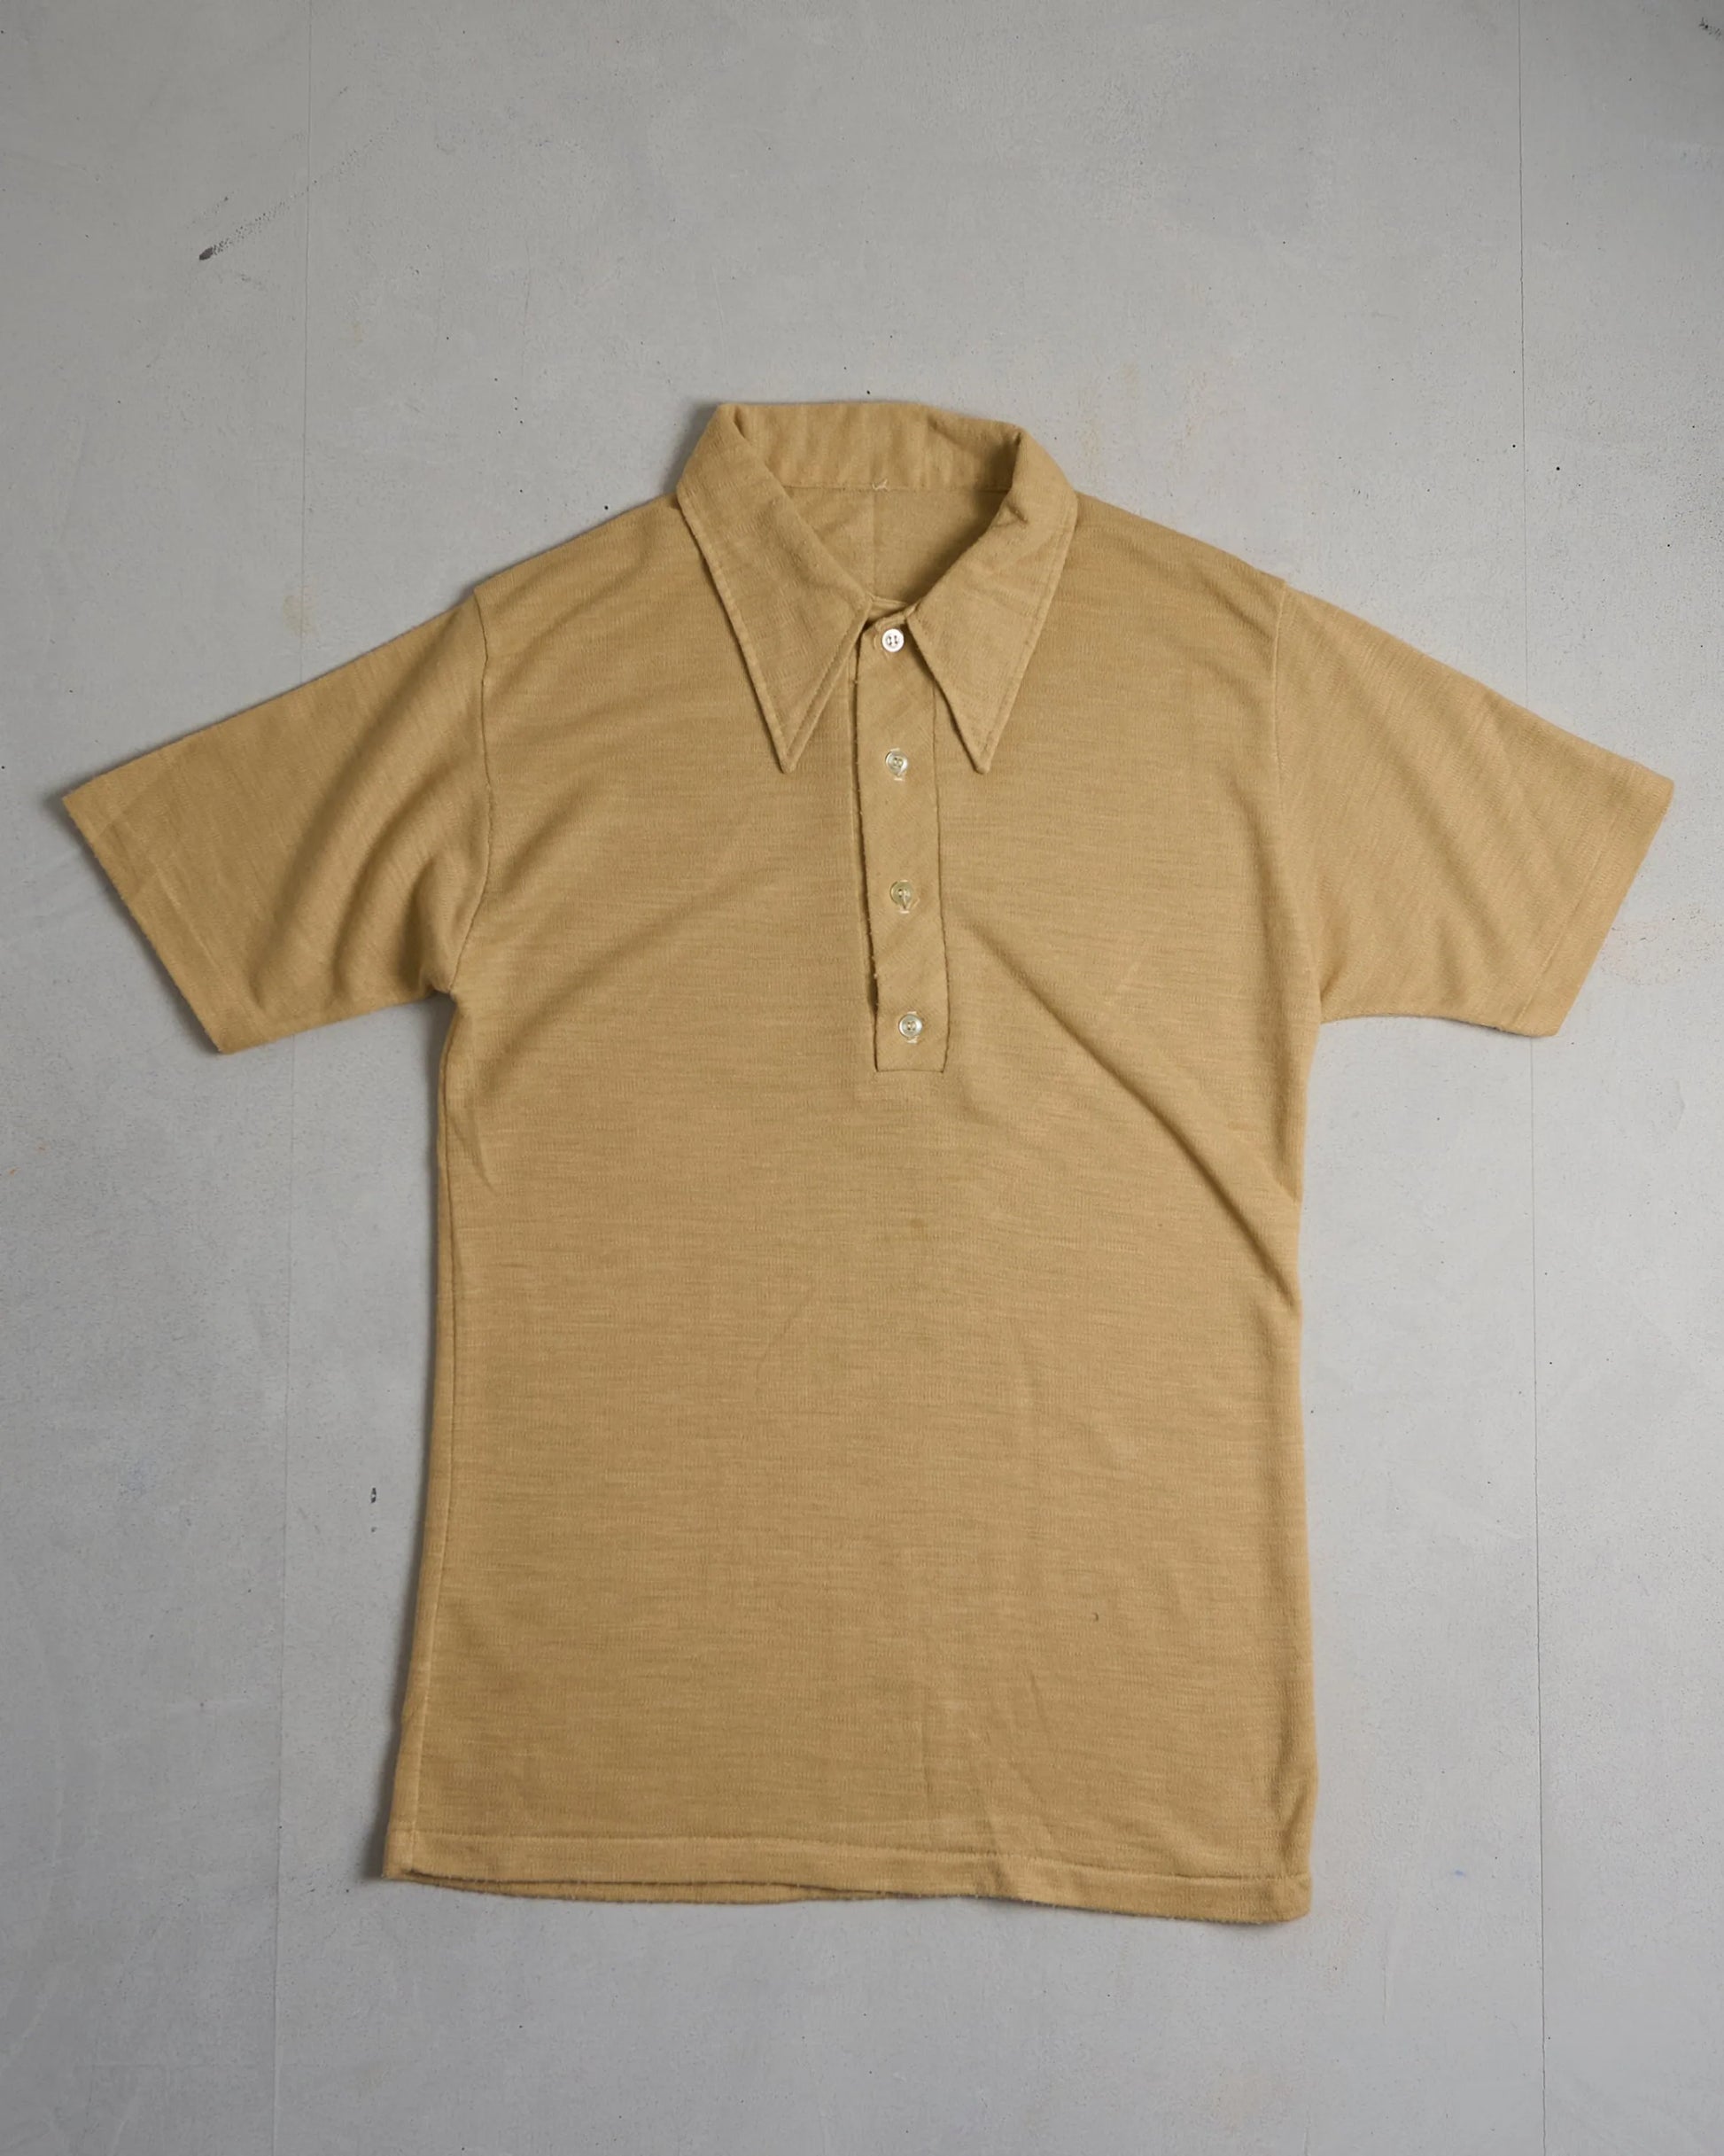 Vintage Polo Shirt